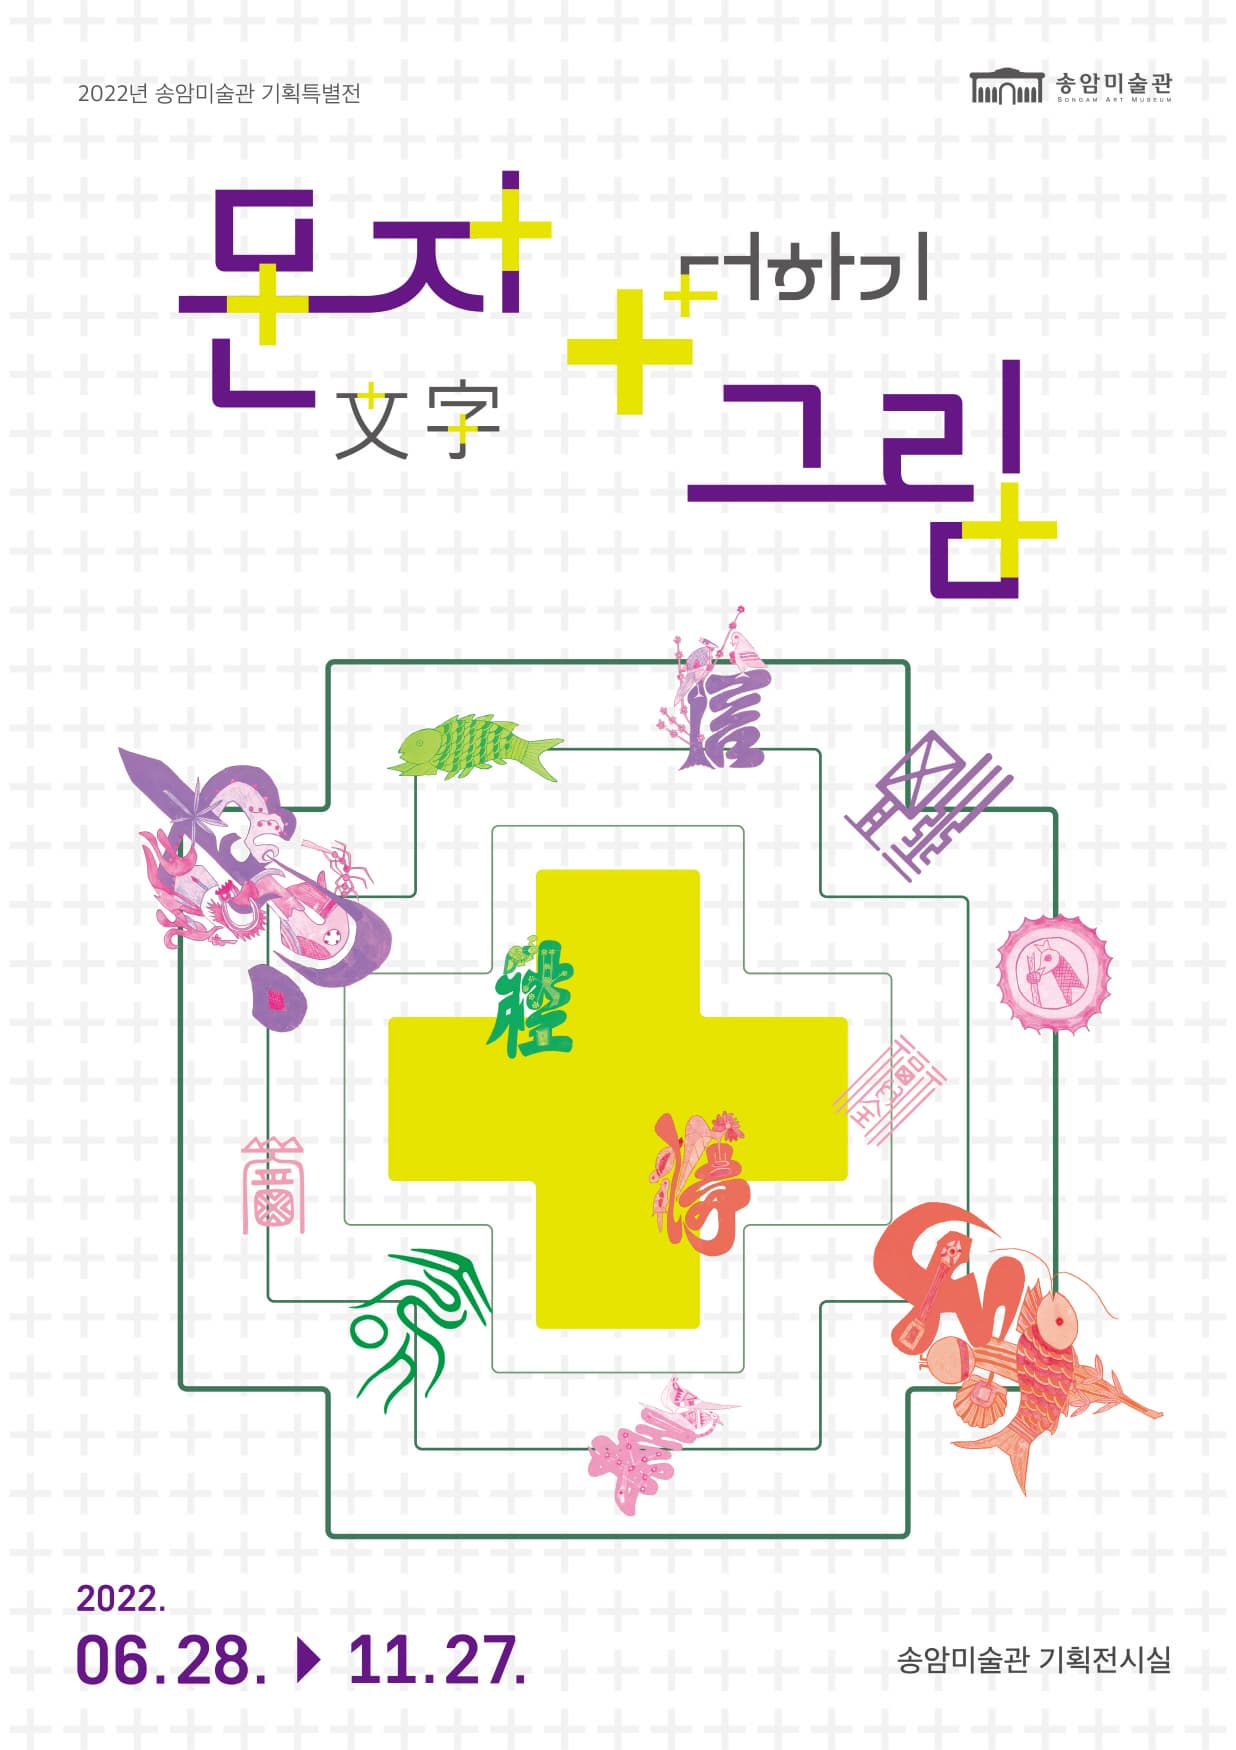 [전시]송암미술관 2022년 체험특별전 ' 문자 + 더하기 그림'